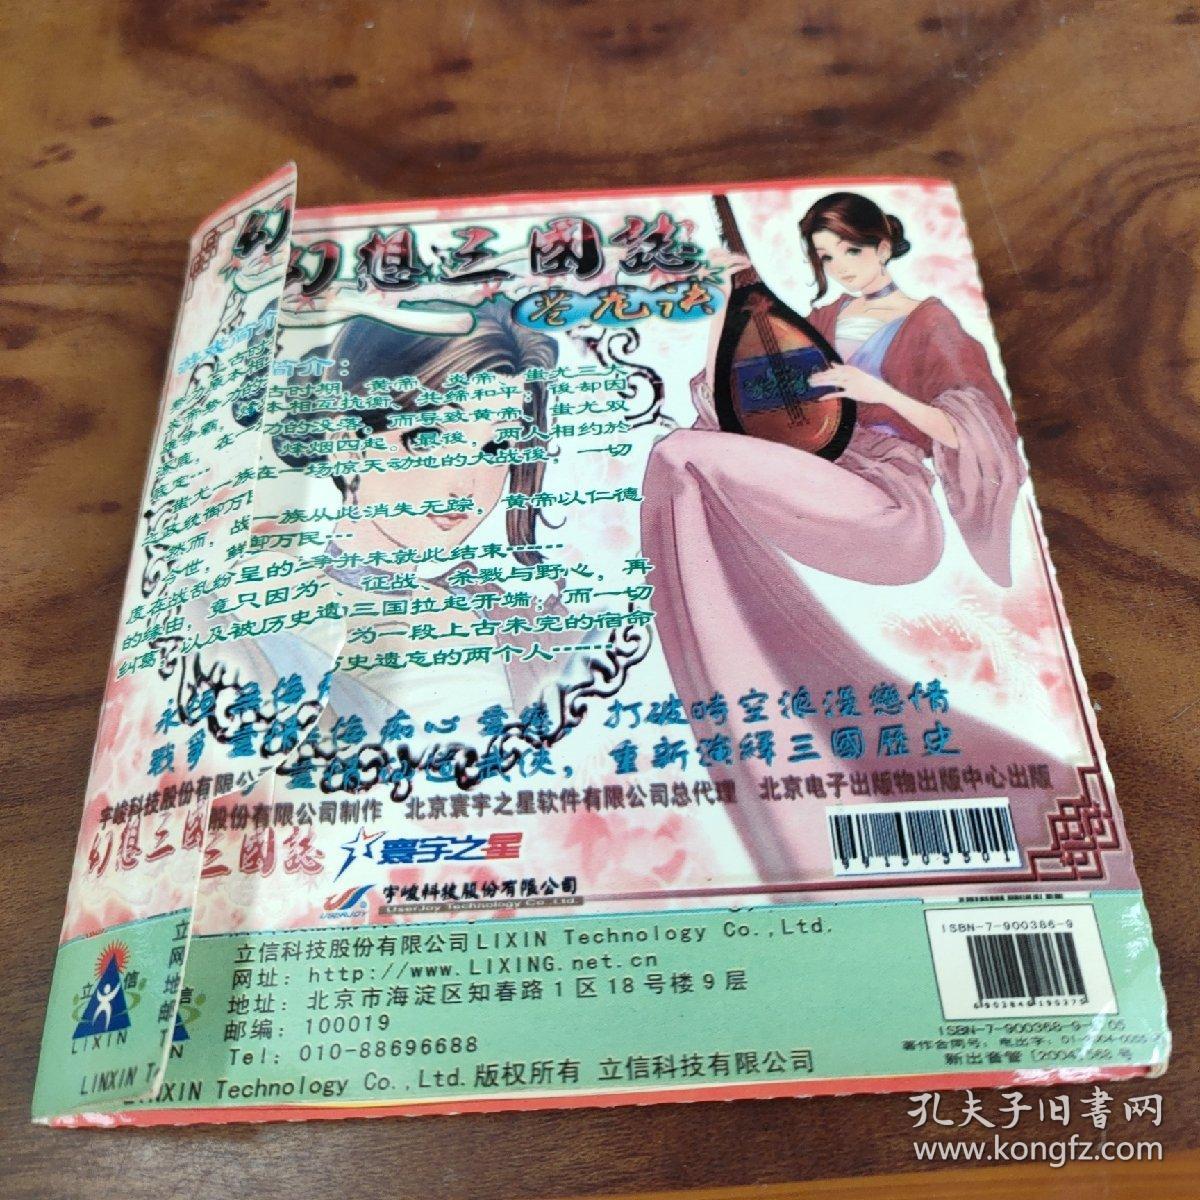 幻想三国志 苍龙诀 2CD 简体中文正式版